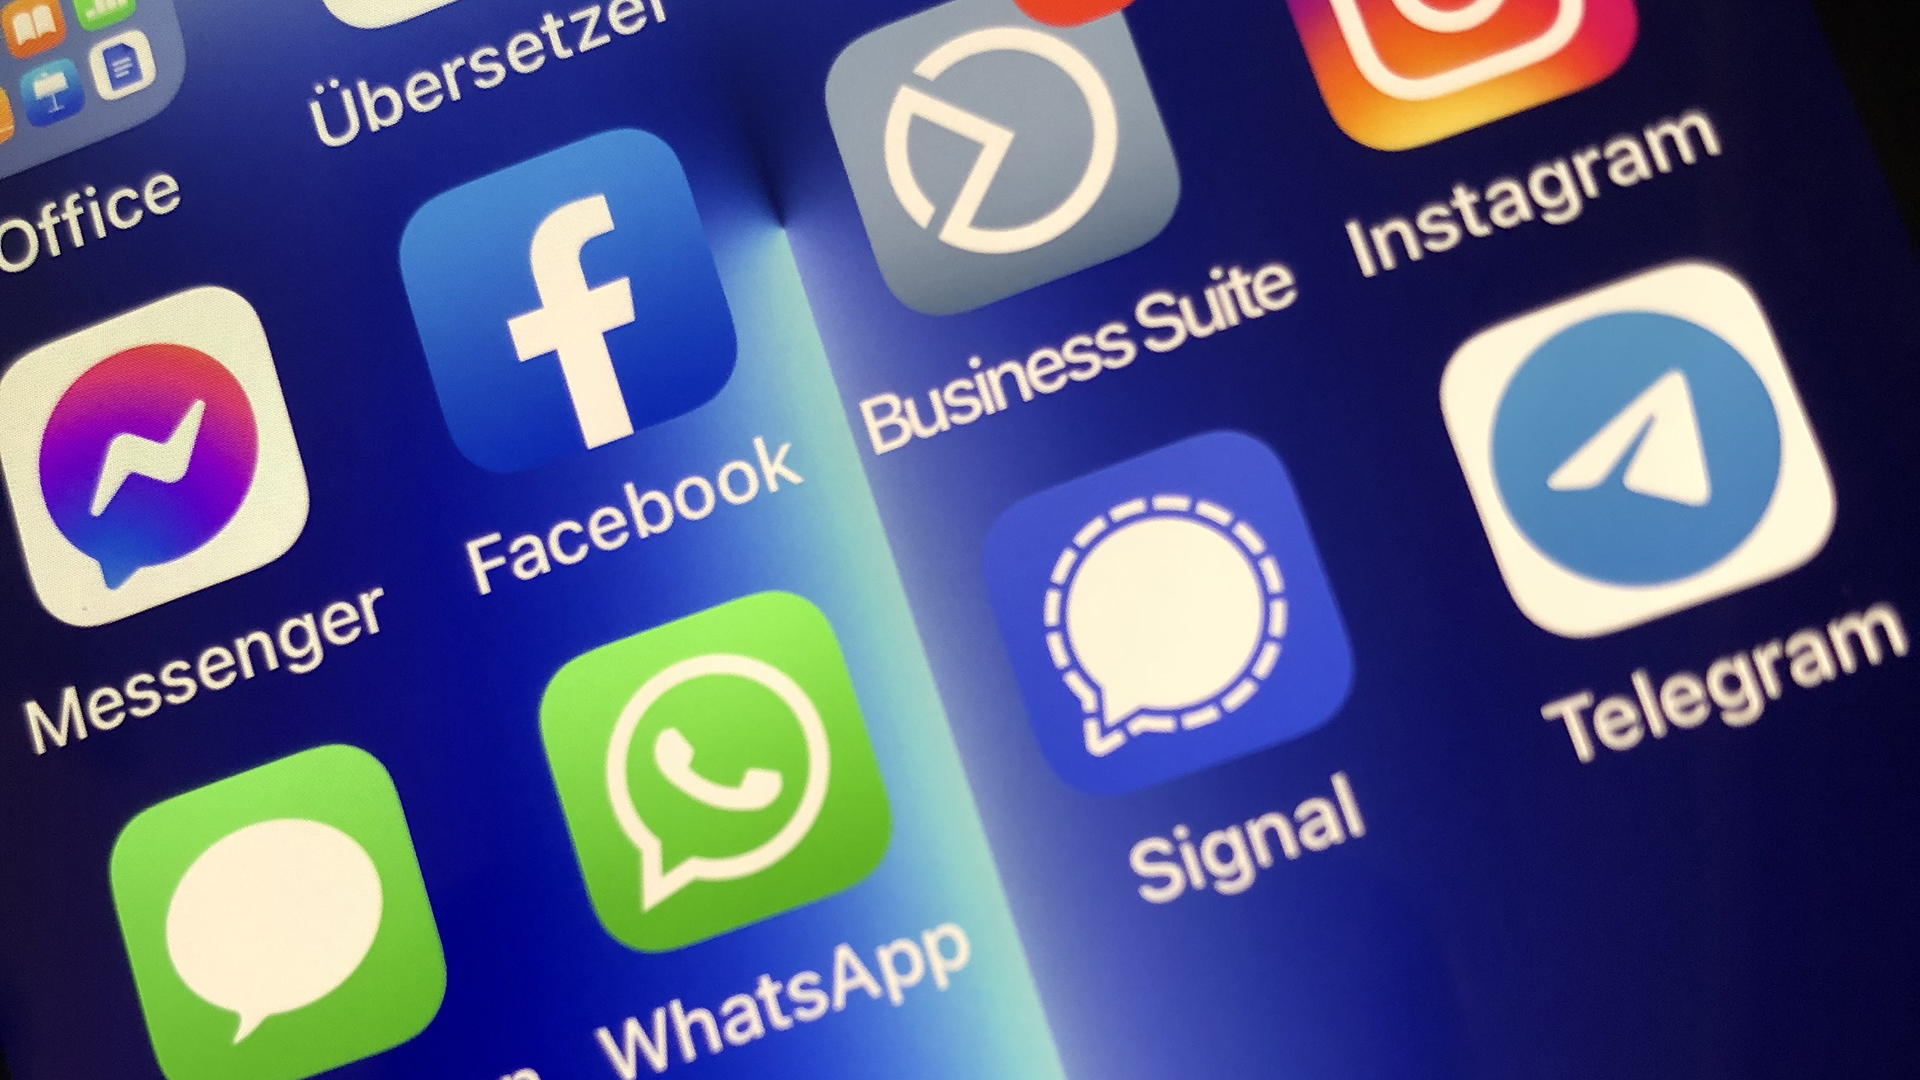 Auf einem Smartphonedisplay sind mehrere Apps wie Instagram, facebook, Telegram, WhatsApp zu sehen. | Jens Eberl/WDR